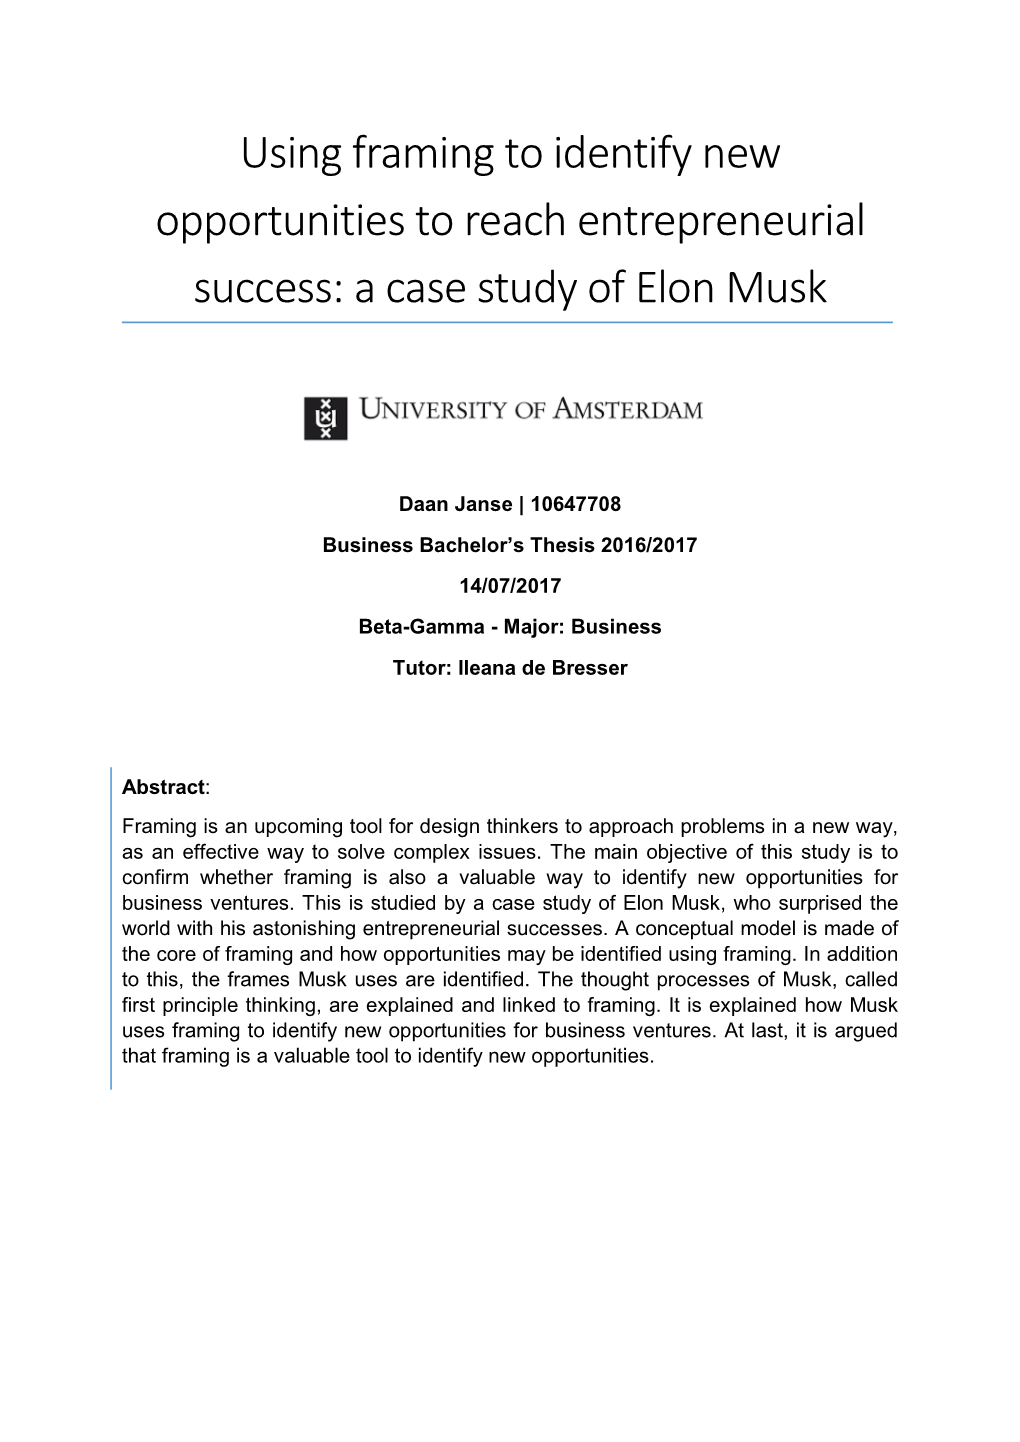 A Case Study of Elon Musk